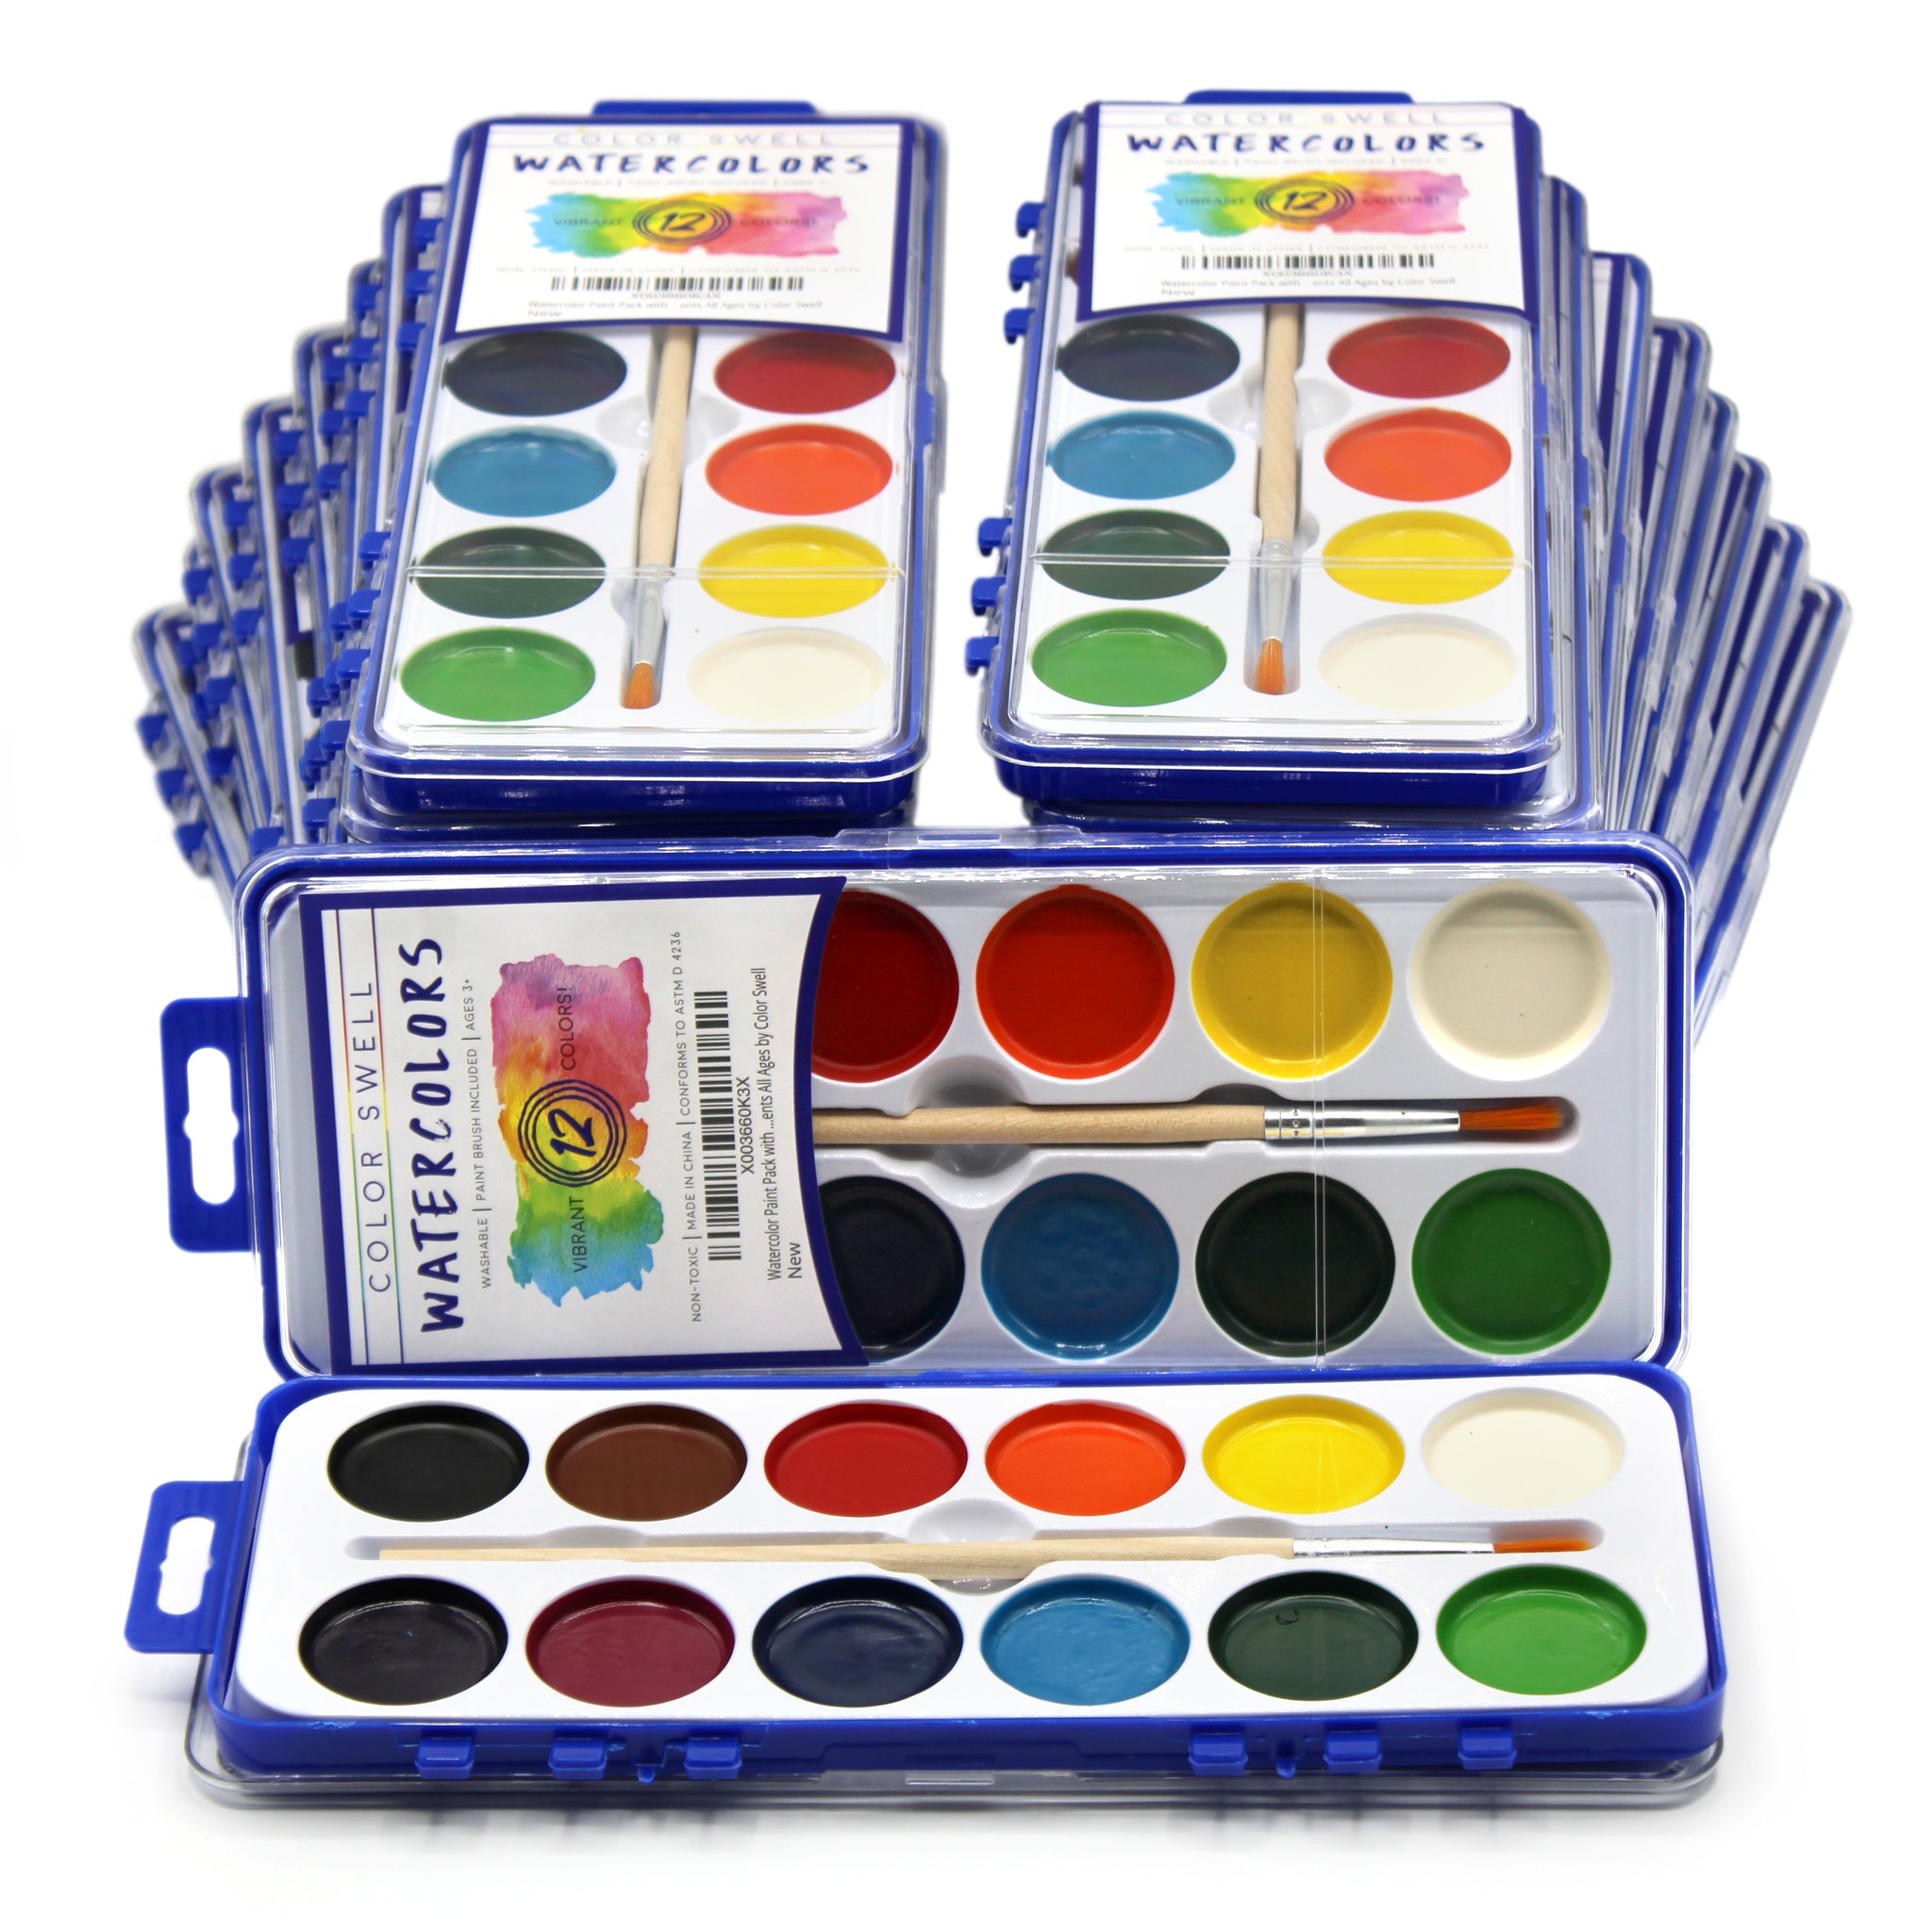 48 Pieces Watercolor Paint Sets Bulk 12 Colors Washable Watercolor Paints  Kids Art Painting Supplies for Kids Adults Art Activities Home Classroom